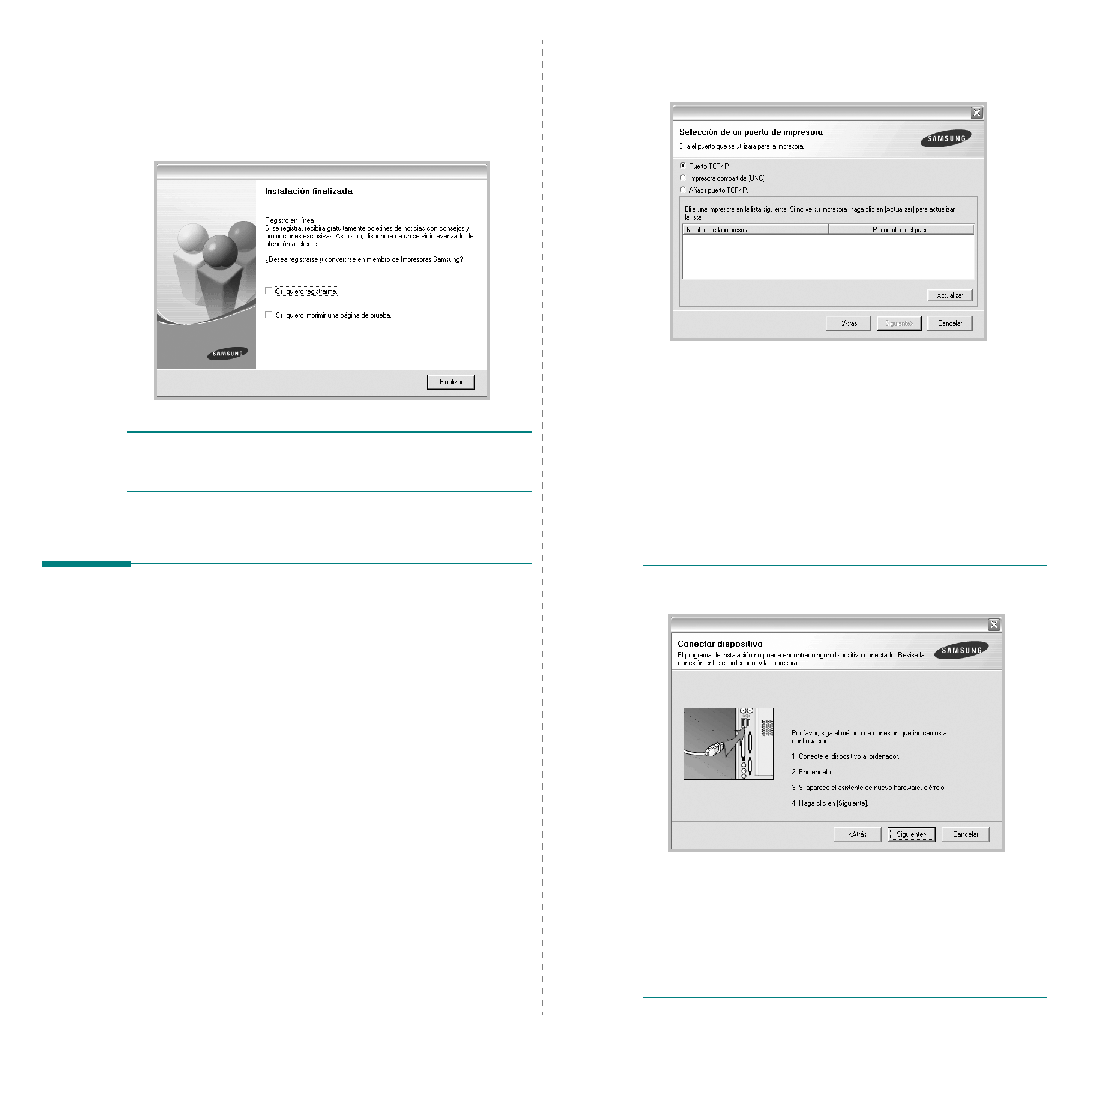 Samsung ML-4050N User Manual (ver.3.00)